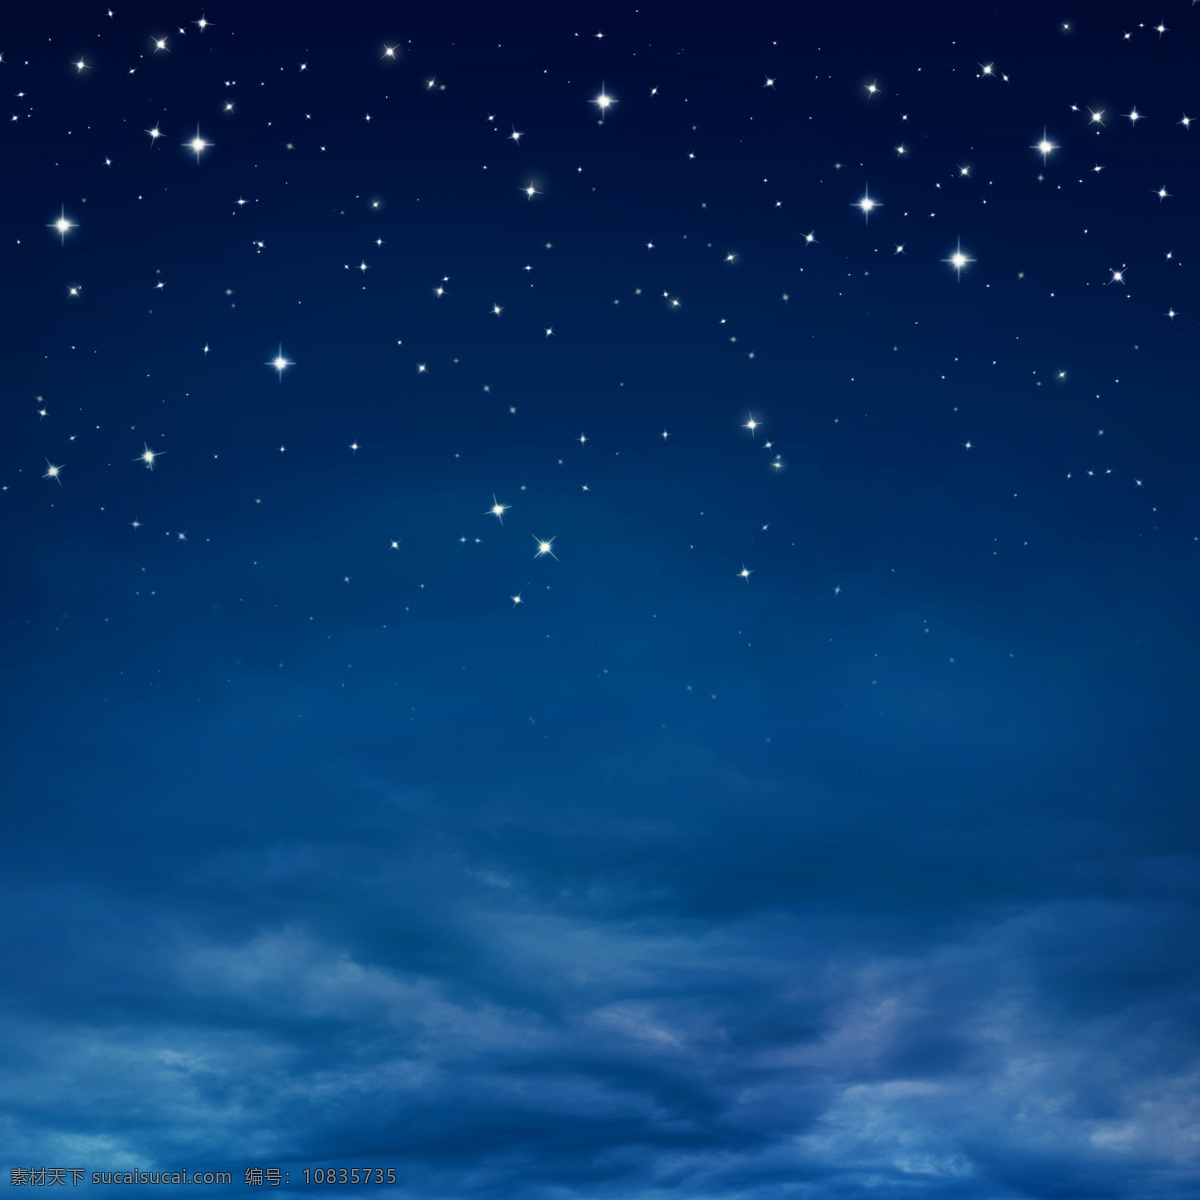 蓝天 里 闪闪 星星 繁星 星空 夜空 夜景 天空云彩 自然风景 自然景观 蓝色